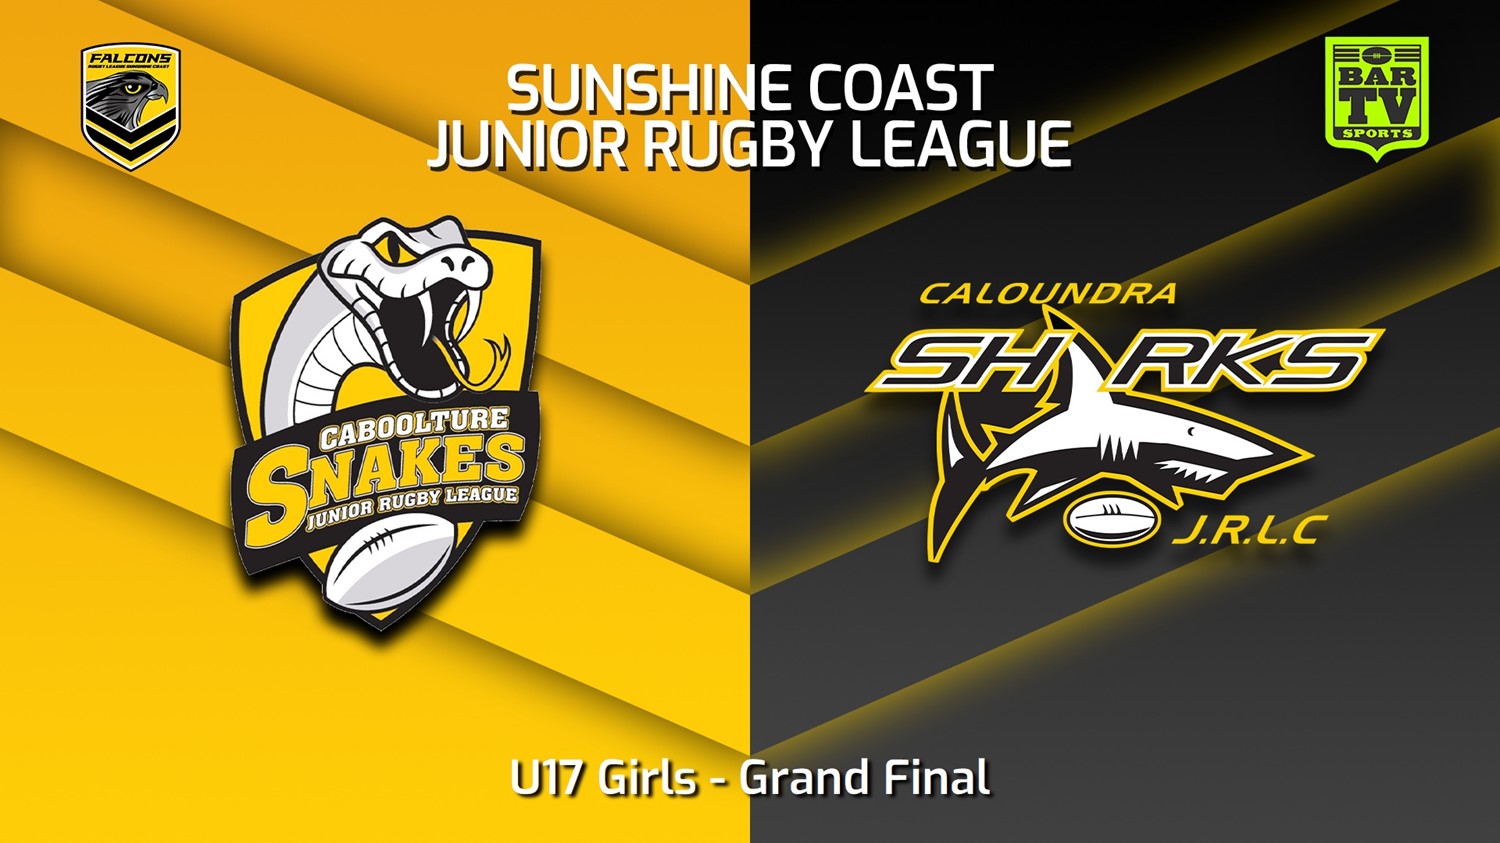 230902-Sunshine Coast Junior Rugby League Grand Final - U17 Girls - Caboolture Snakes JRL v Caloundra Sharks JRL Slate Image